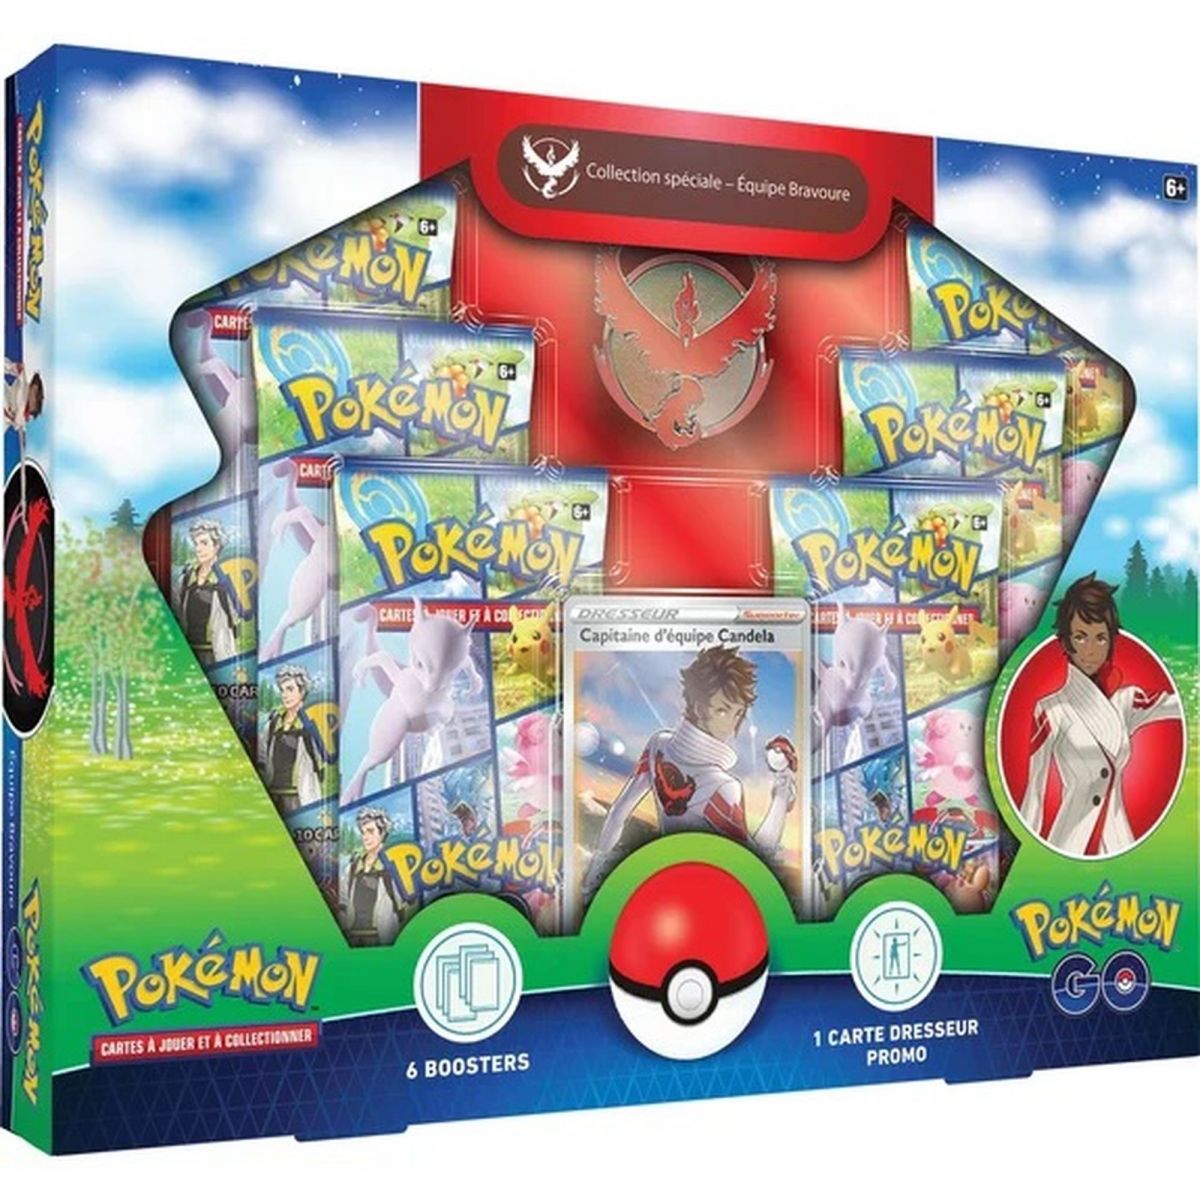 Pokémon - Box - Special Collection Box - Team Bravery - Pokémon Go [EB10.5] - FR